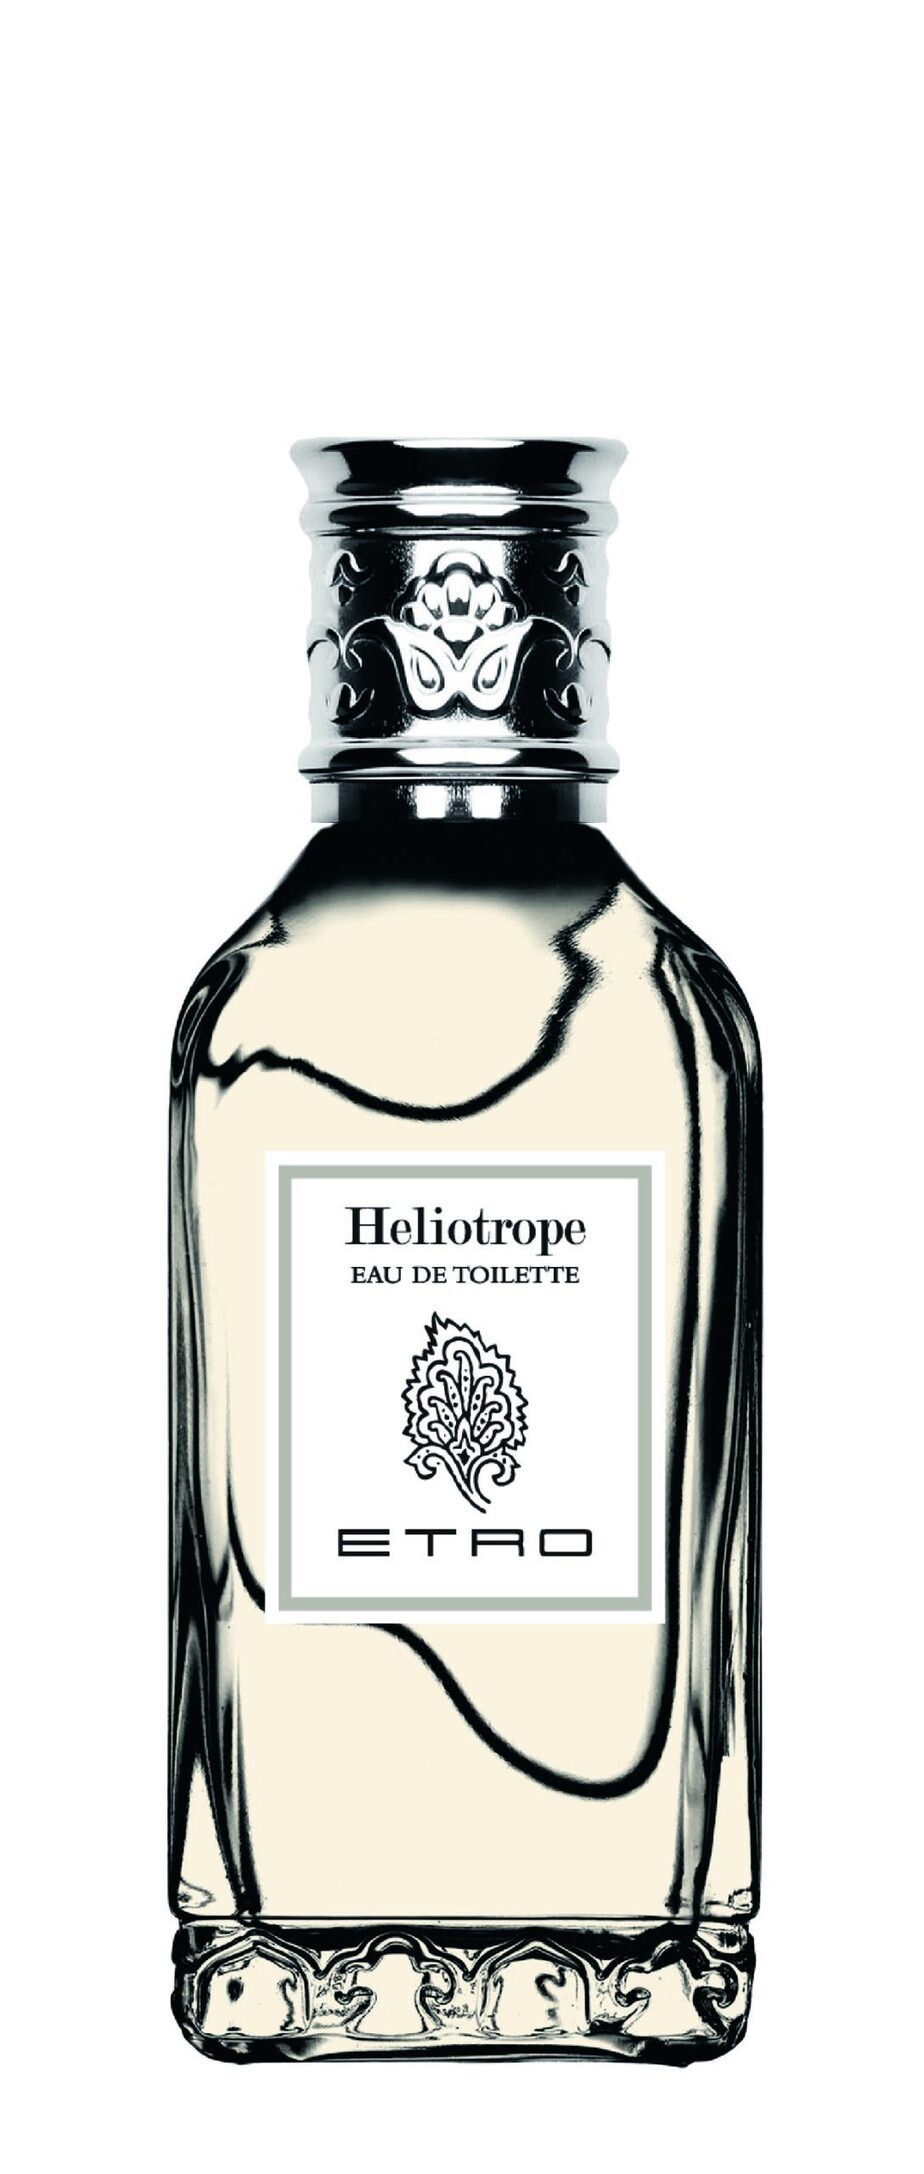 Luxus Parfum ETRO Heliotrope EDT - 50ml kaufen